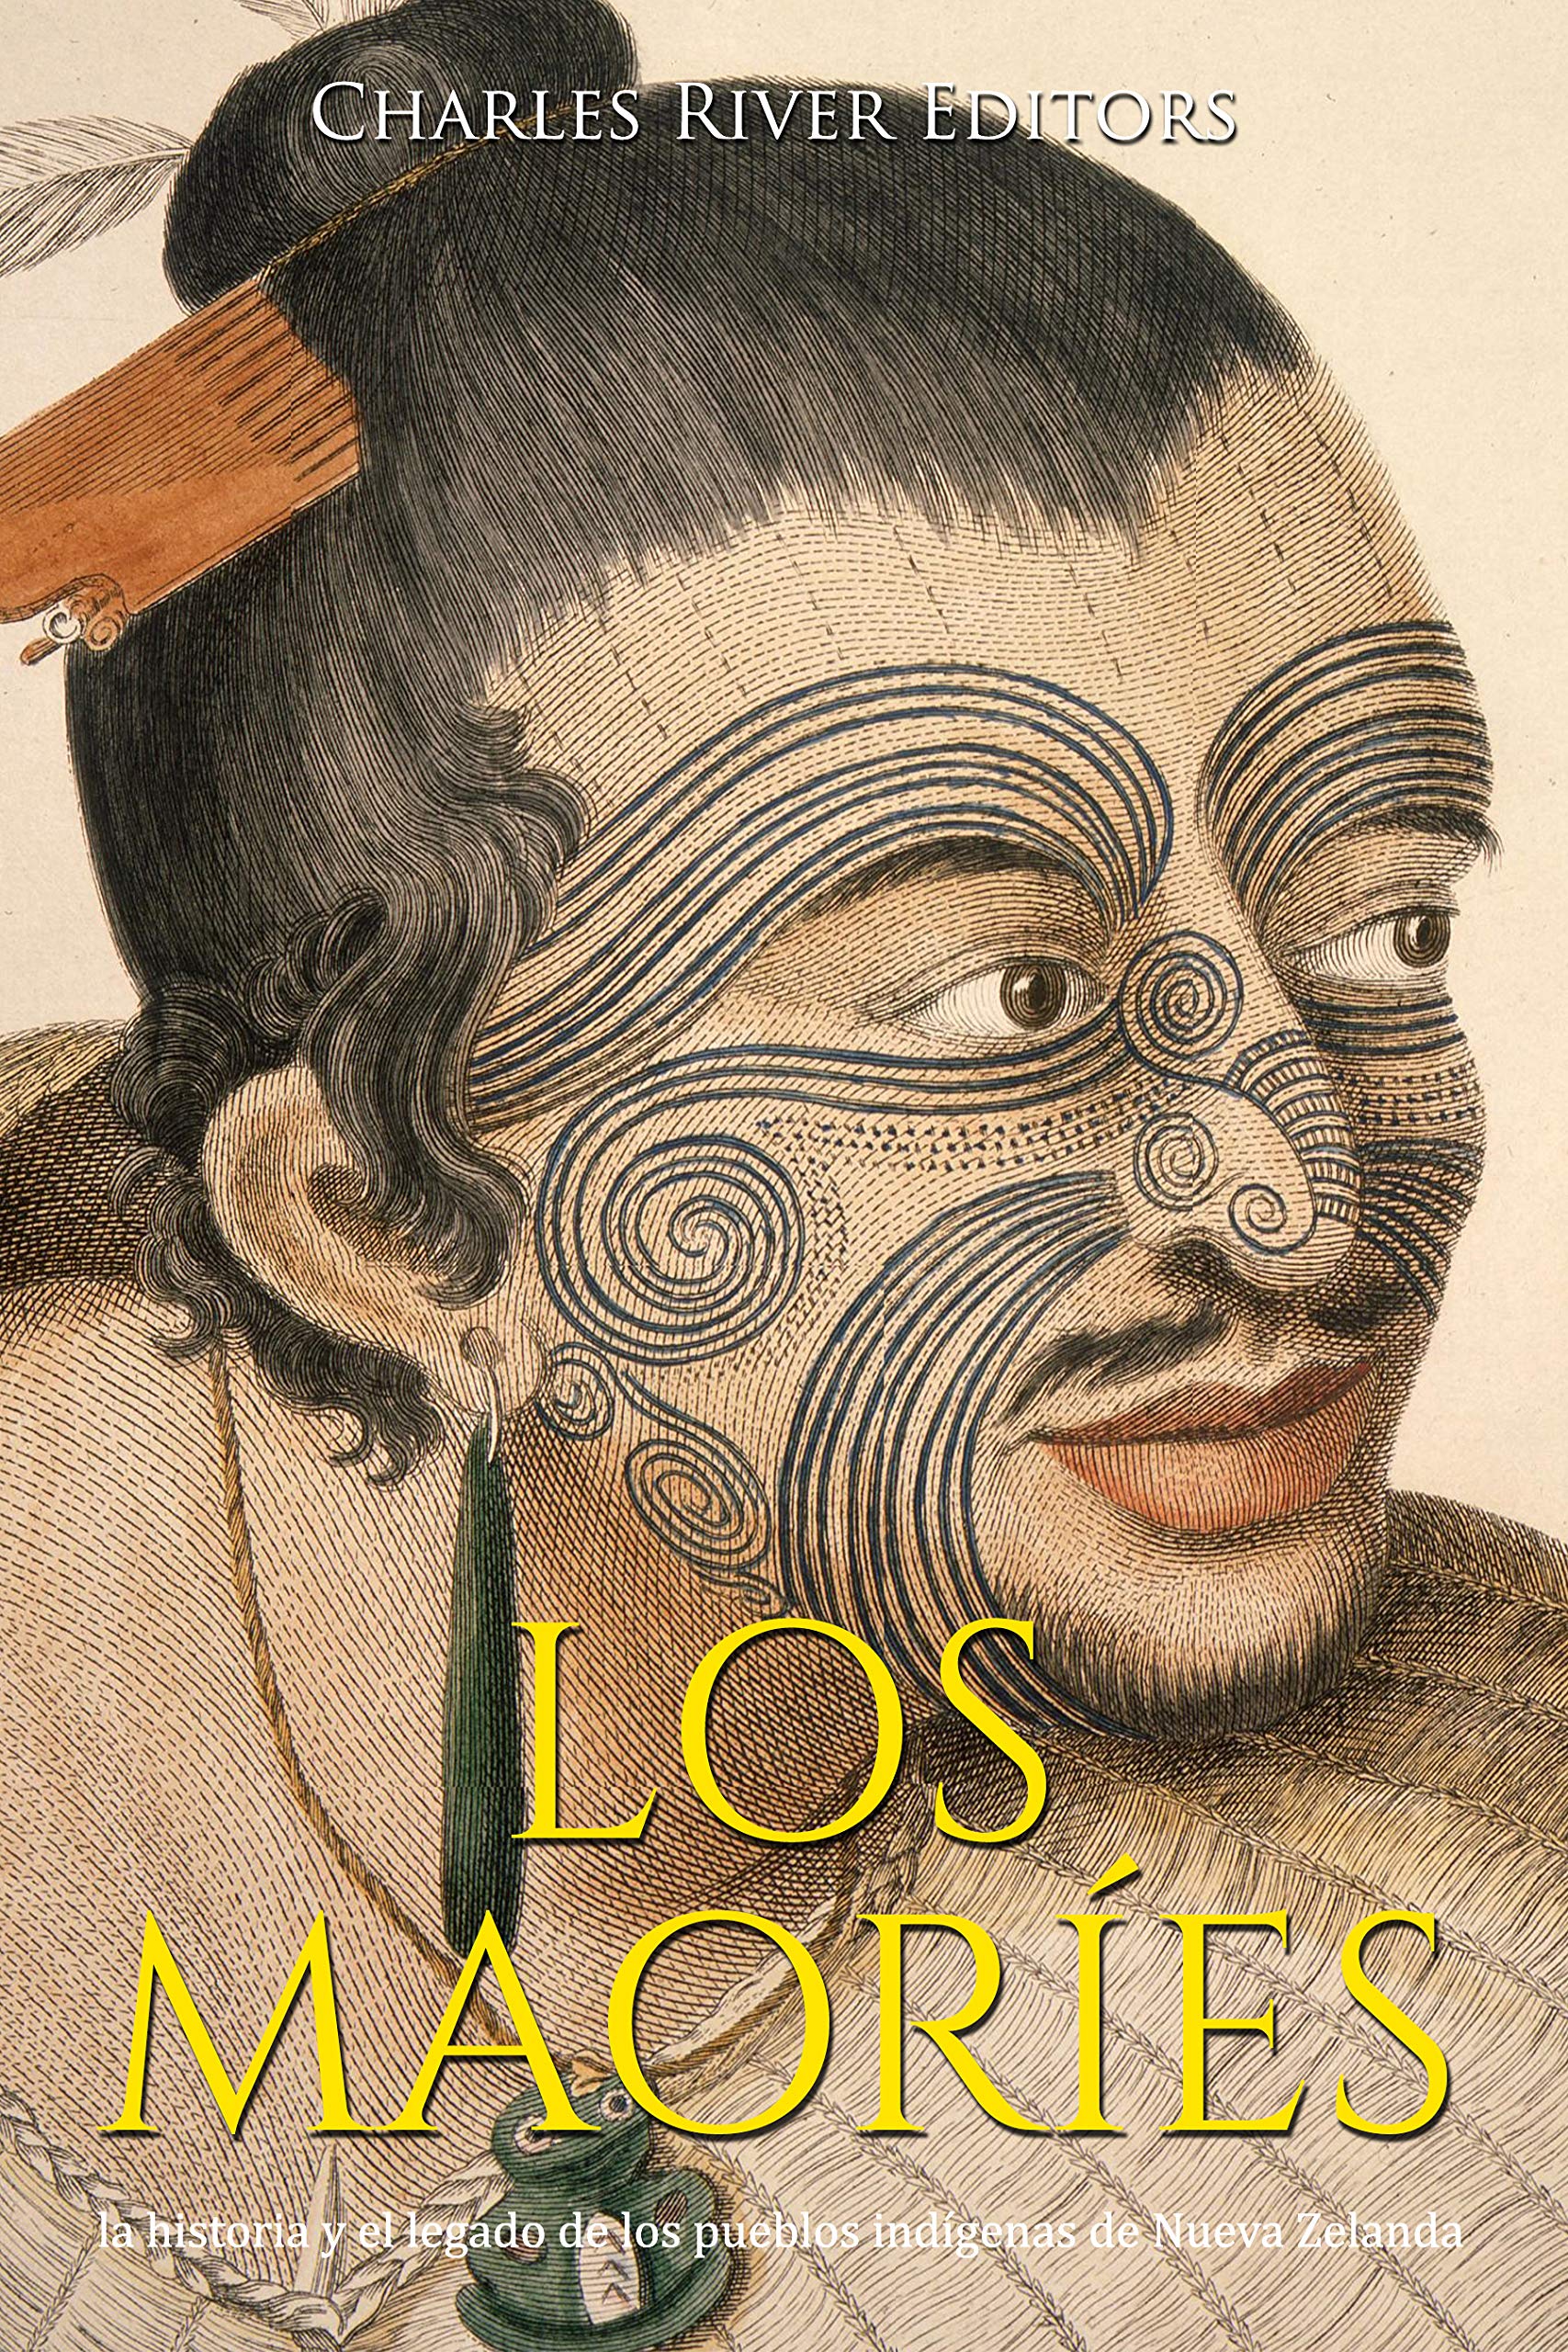 Los maoríes: la historia y el legado de los pueblos indígenas de Nueva Zelanda (Spanish Edition)